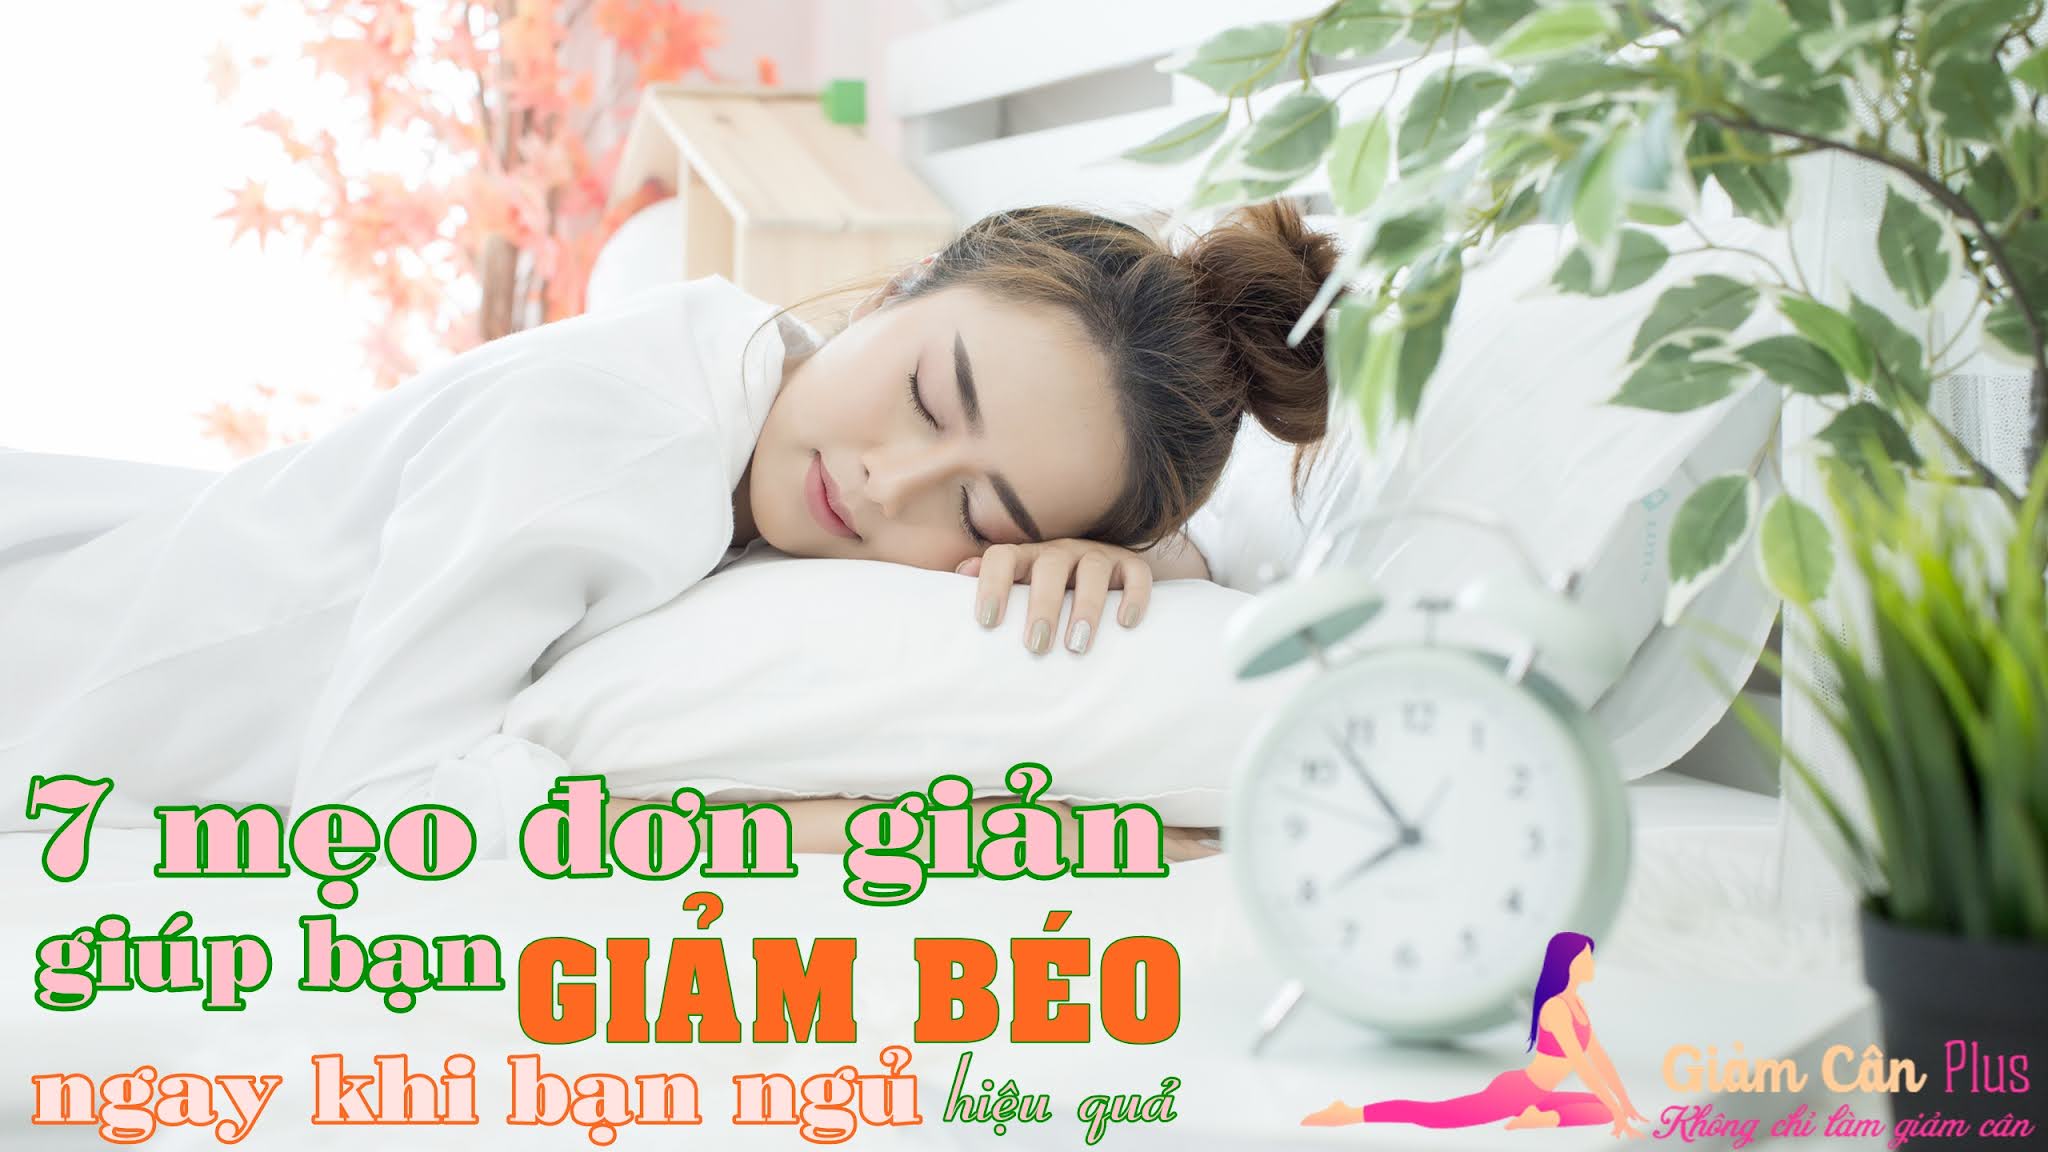 Bảy mẹo đơn giản giúp bạn GIẢM BÉO hiệu quả ngay khi đang ngủ | Giảm Cân  Plus | Không chỉ là giảm cân | Chuyên gia tư vấn giảm mỡ tăng cơ